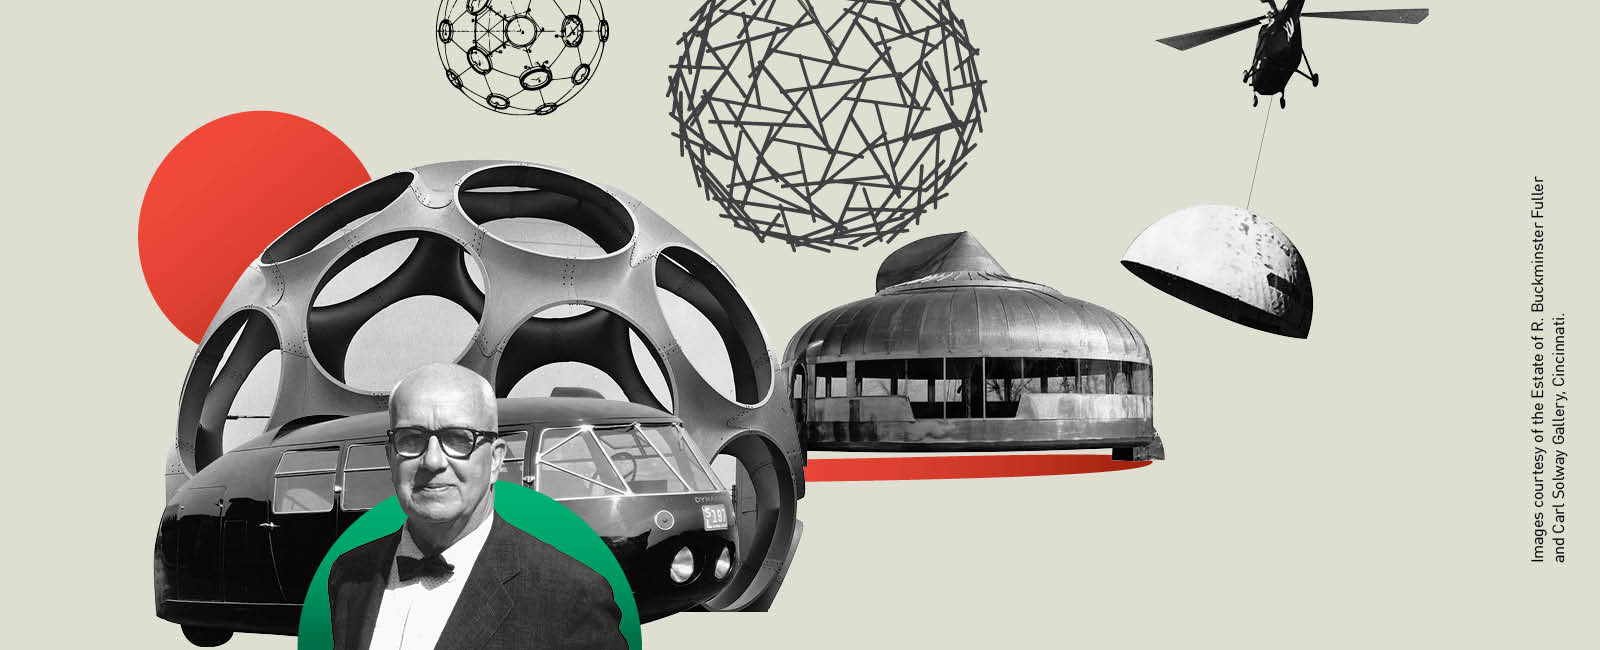 『Radical Curiosity: In the Orbit of Buckminster Fuller』展 